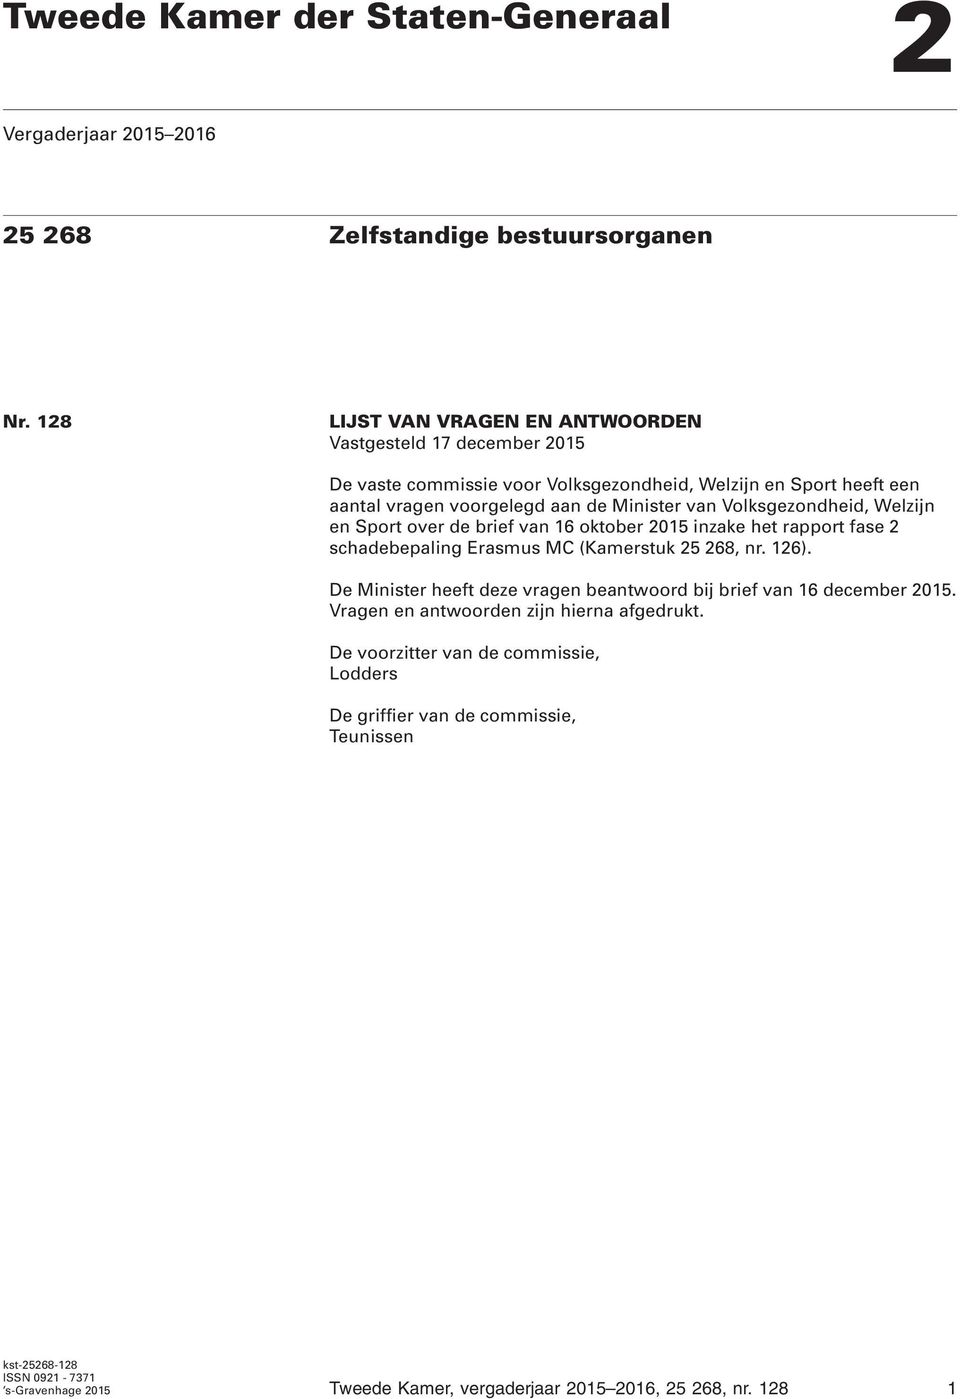 Volksgezondheid, Welzijn en Sport over de brief van 16 oktober 2015 inzake het rapport fase 2 schadebepaling Erasmus MC (Kamerstuk 25 268, nr. 126).